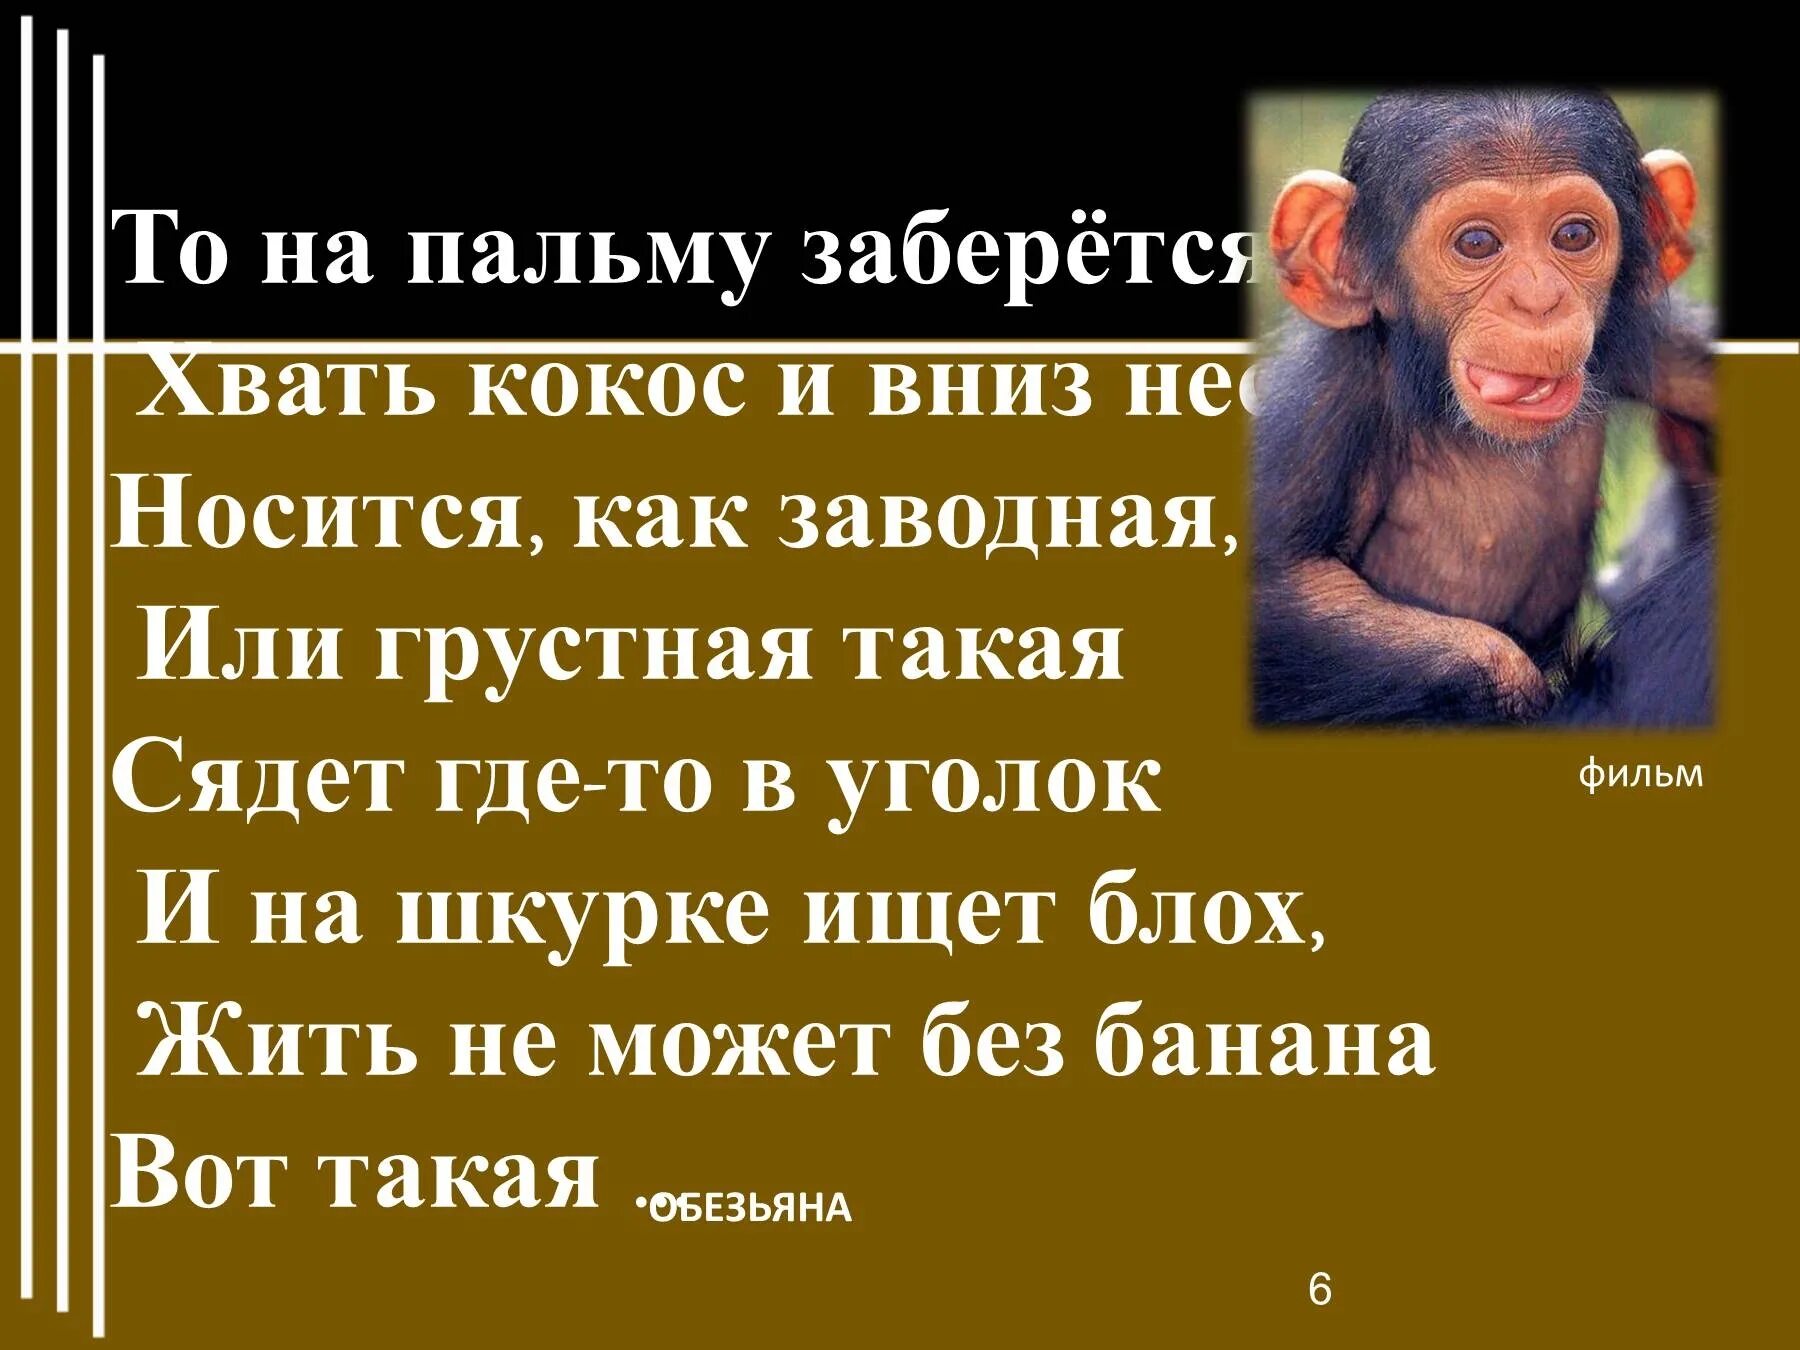 Устойчивые выражения к рассказу житкова об обезьянке. Про обезьянку 3 класс. Житков про обезьянку. Предложение про обезьяну. Рисунок к рассказу про обезьянку.